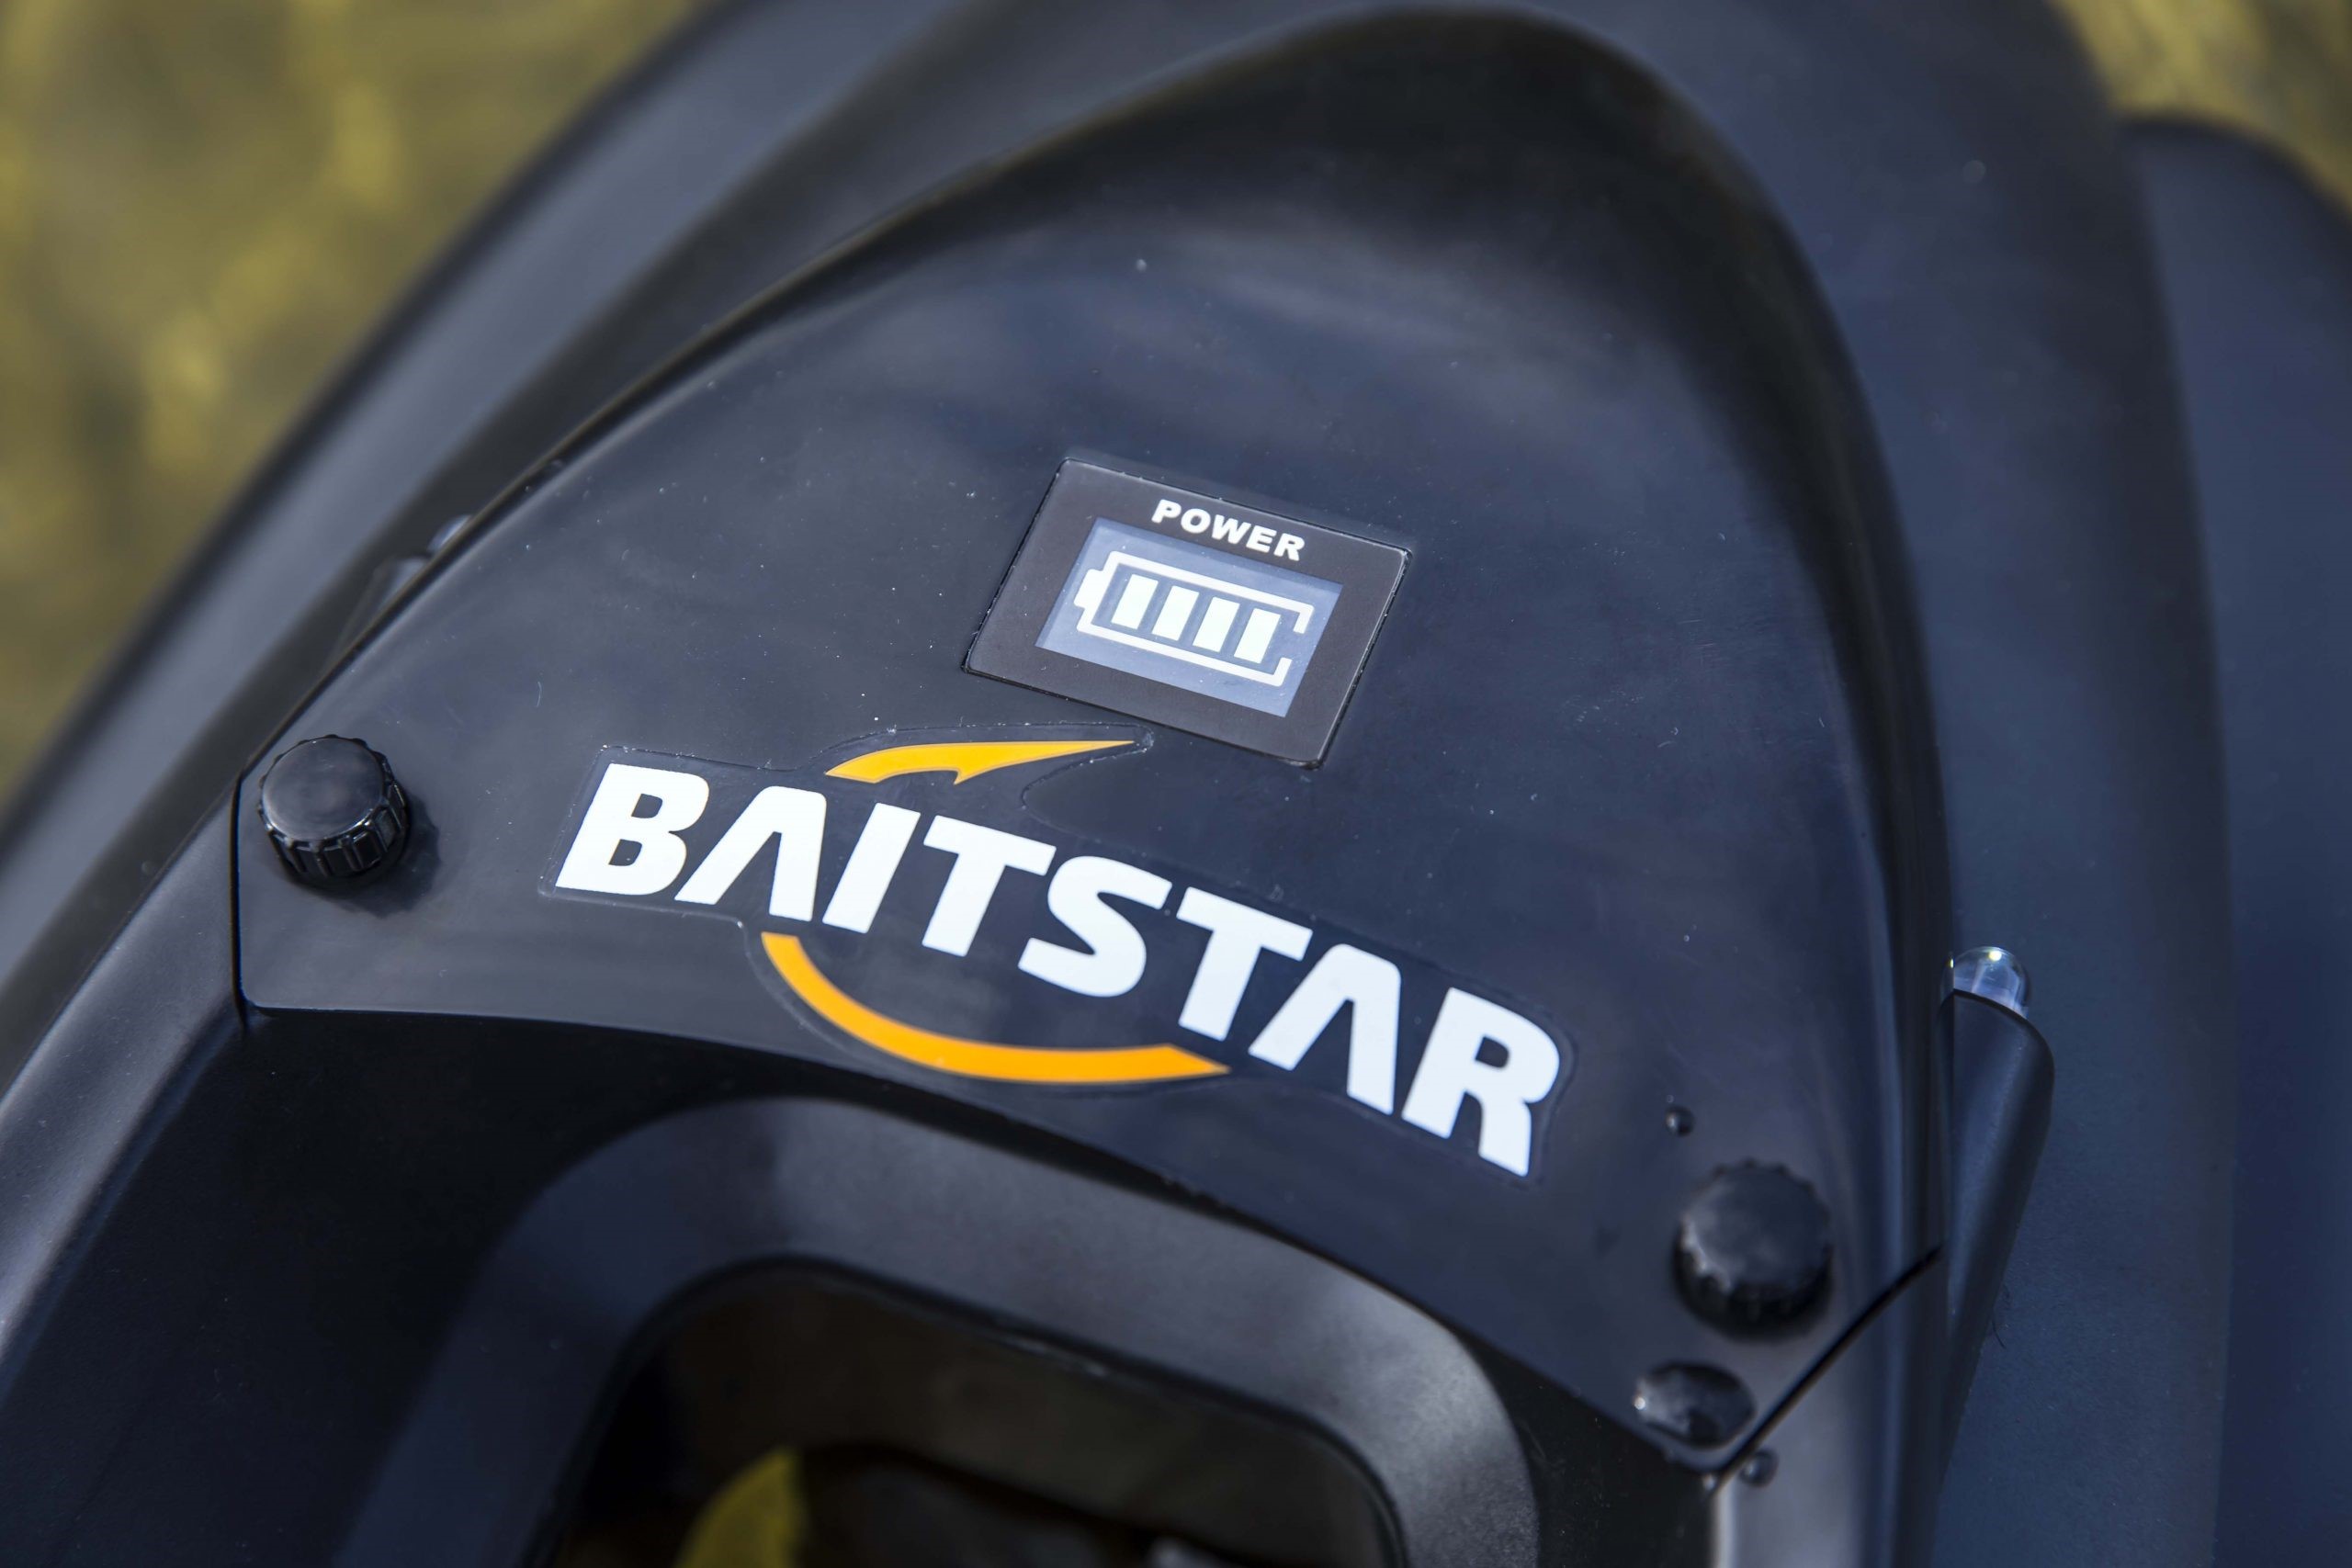 Baitstar Baitboats Compact Carbon (Incl. SonarTab + GPS/AP)